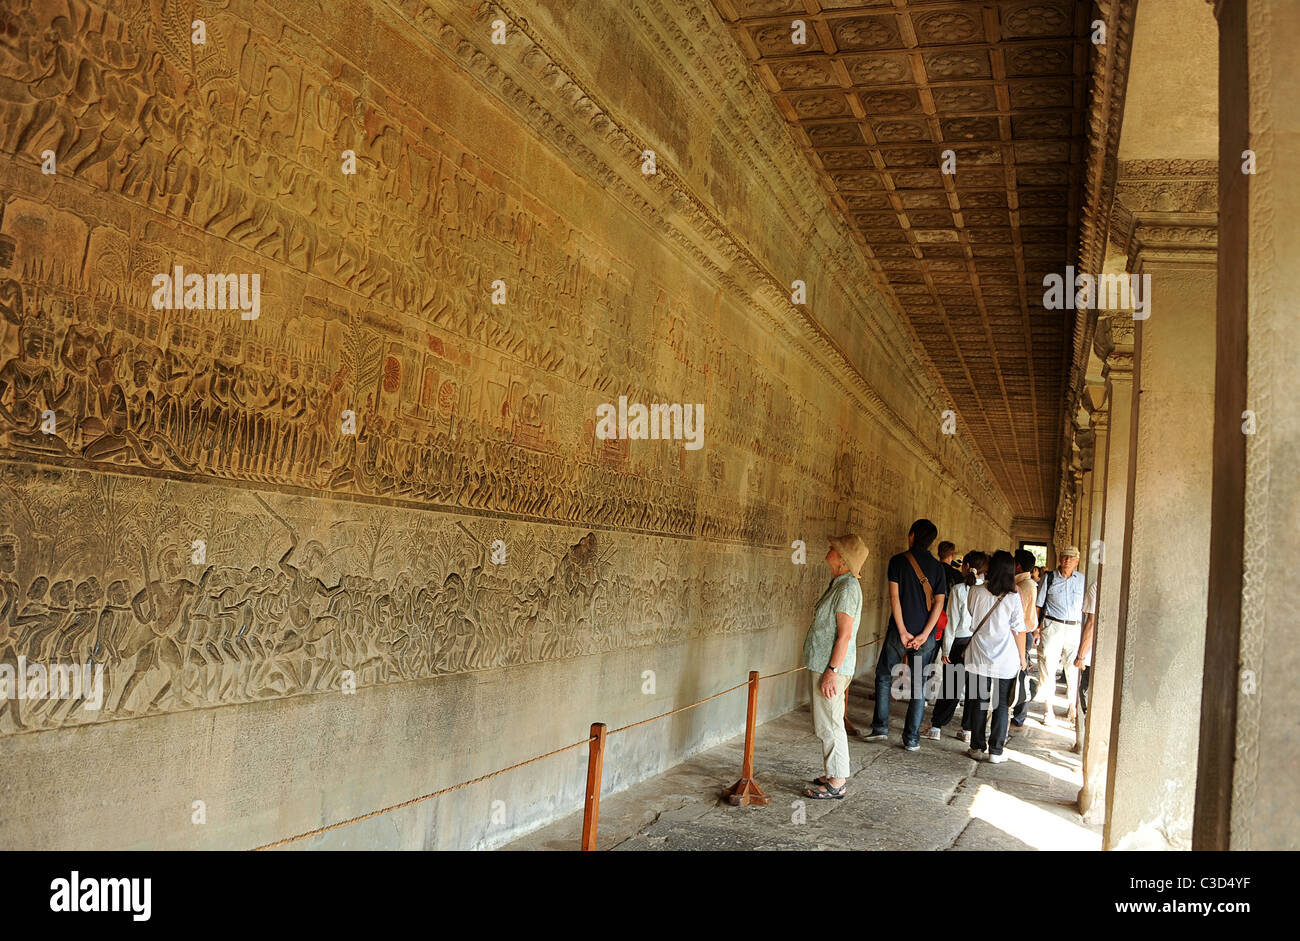 Besucher betrachten Angkor Wat Wand bedeckt mit Reliefs und Schnitzereien mit Geschichten und Charakteren aus der hinduistischen Mythologie Stockfoto